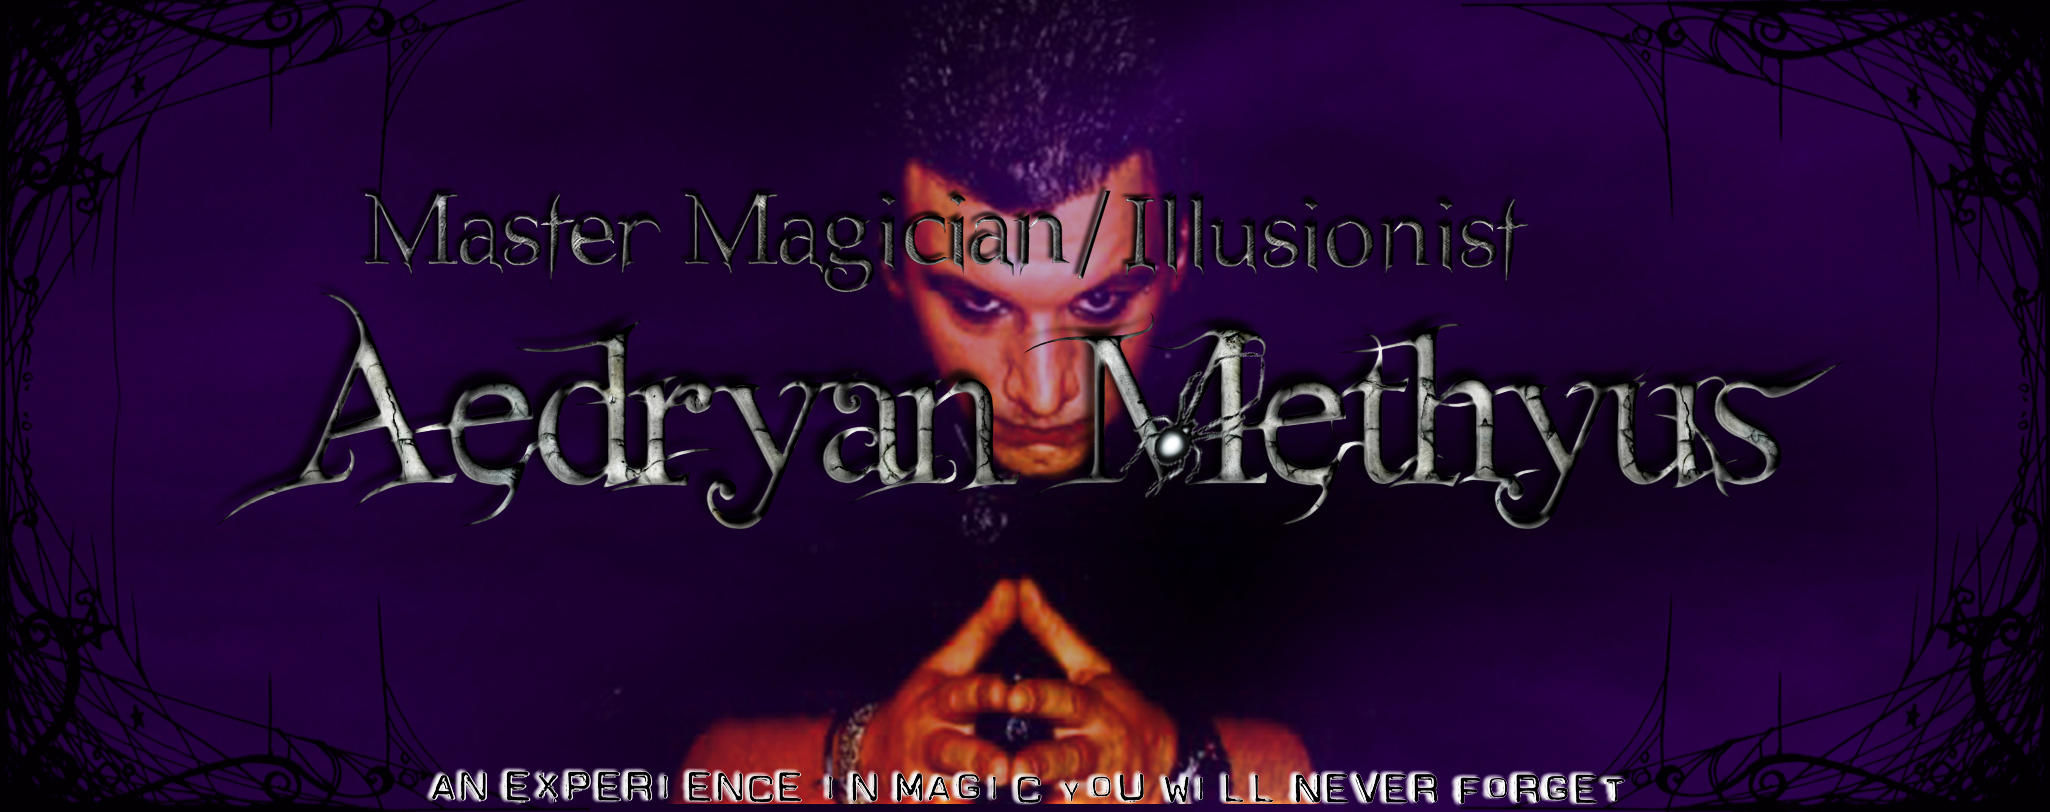 Live Magic Magician Illusionist Photos Pictures Pics